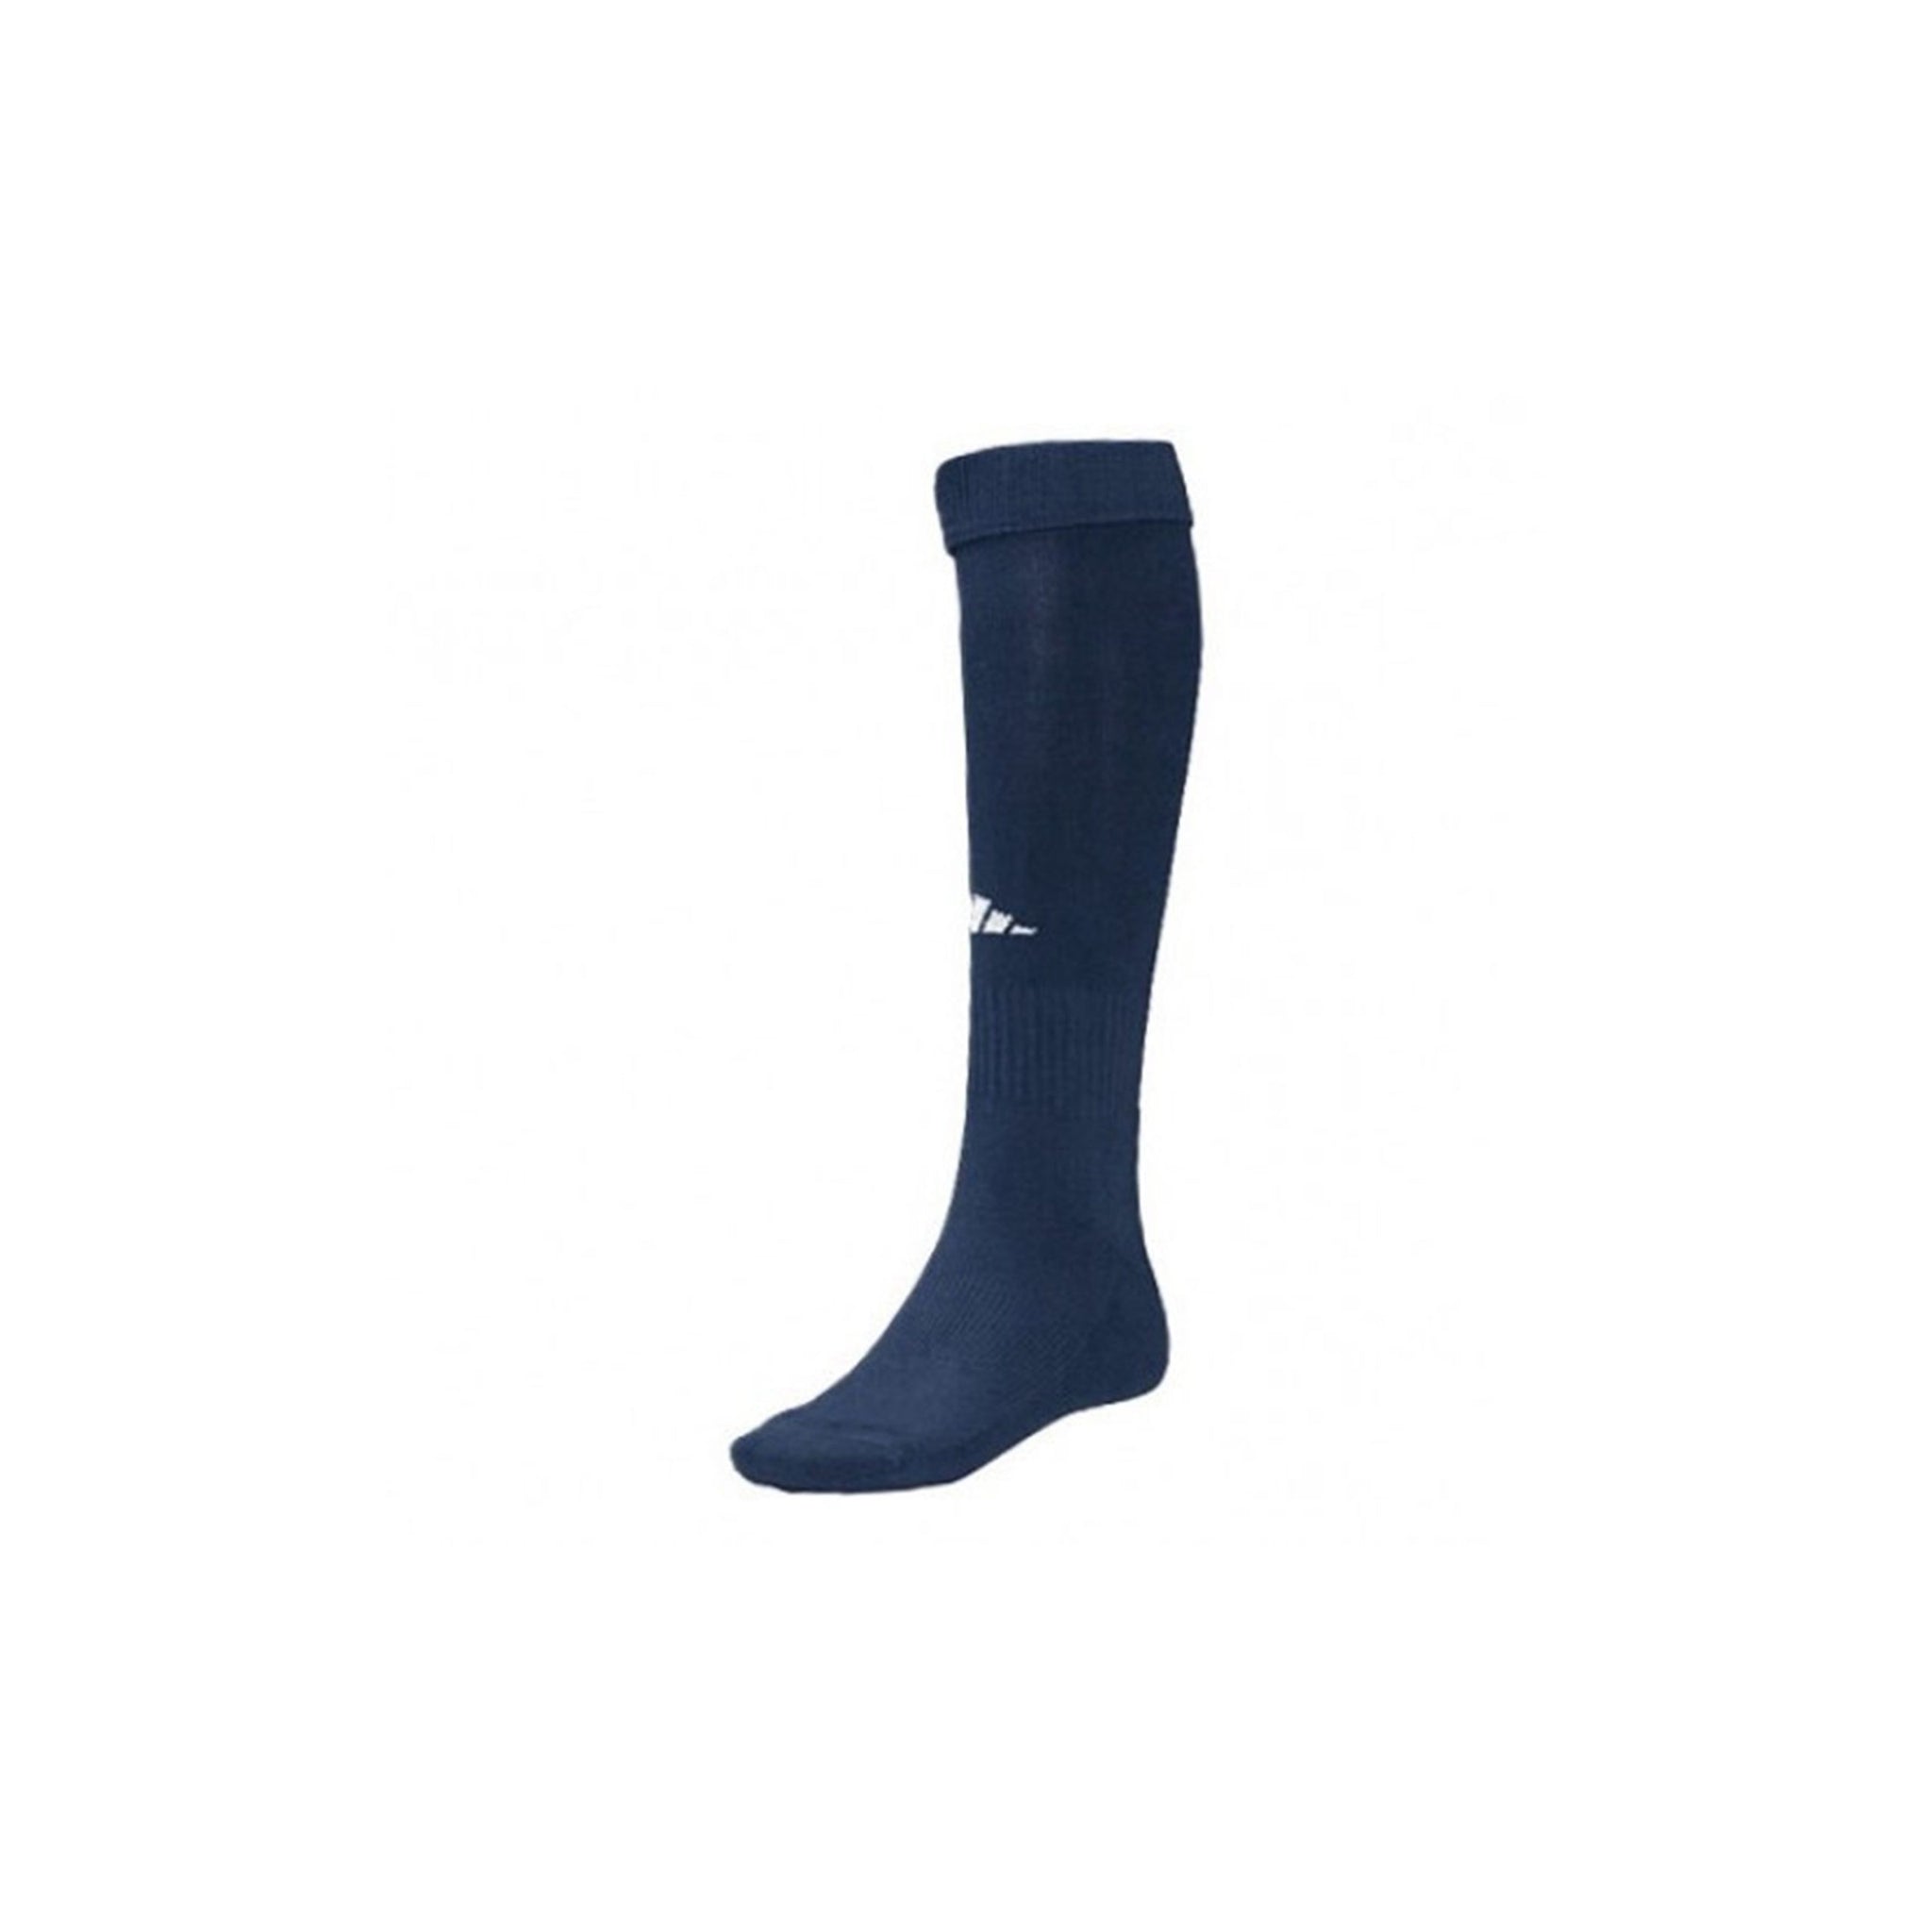 ADIDAS Field Socks (Navy)